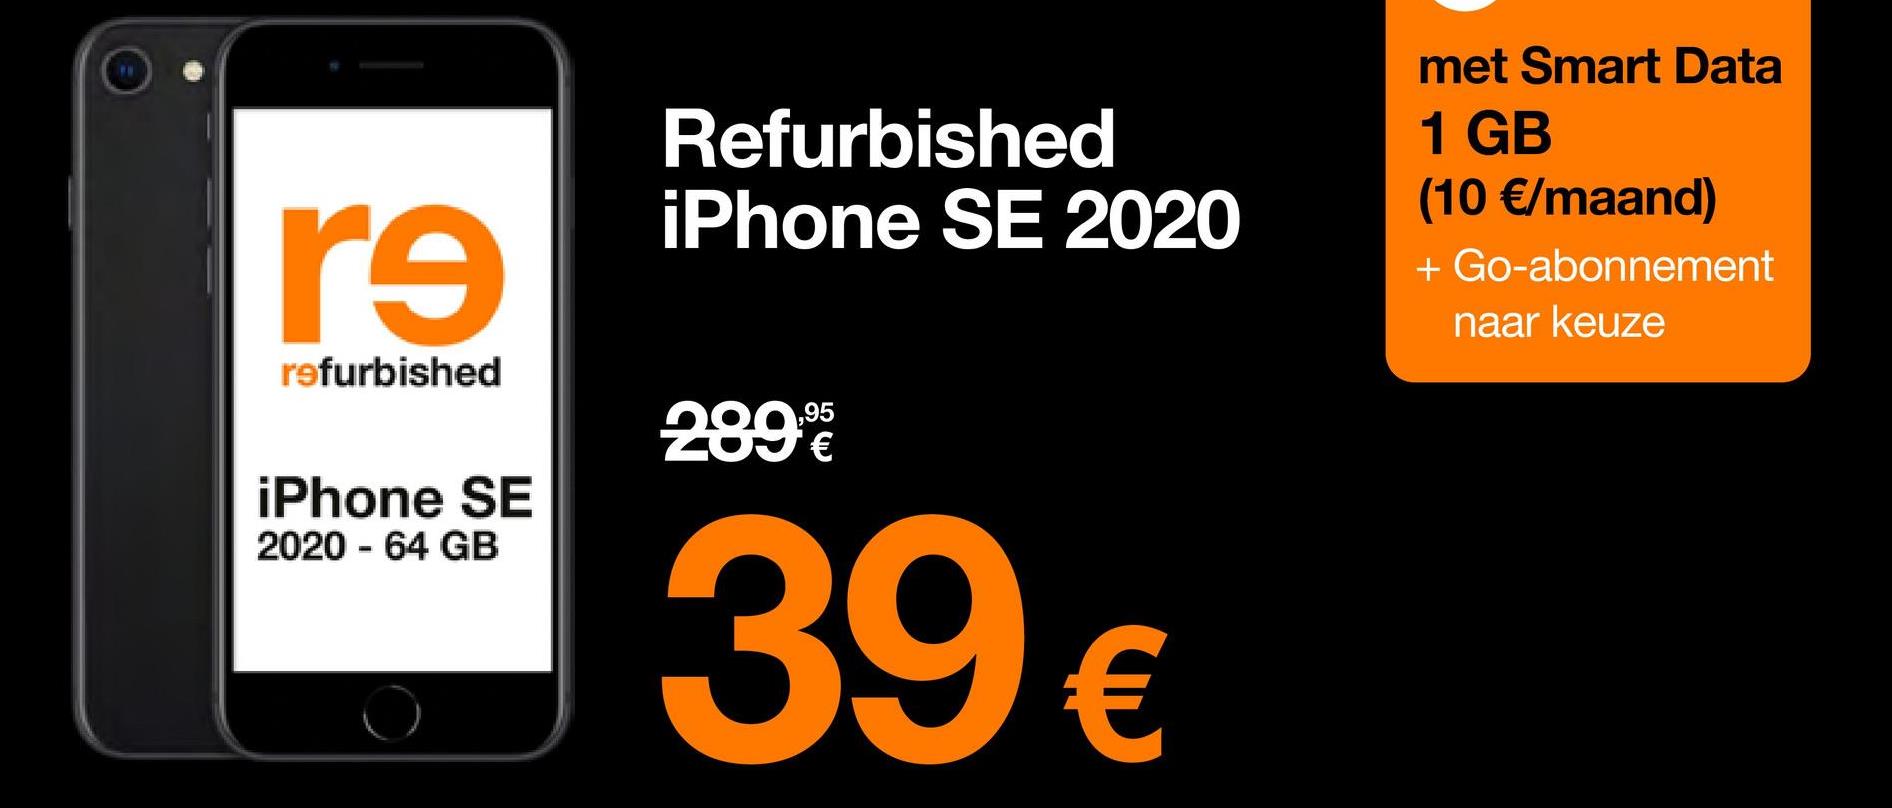 re
refurbished
iPhone SE
2020 - 64 GB
Refurbished
iPhone SE 2020
289%
39 €
met Smart Data
1 GB
(10 €/maand)
+ Go-abonnement
naar keuze